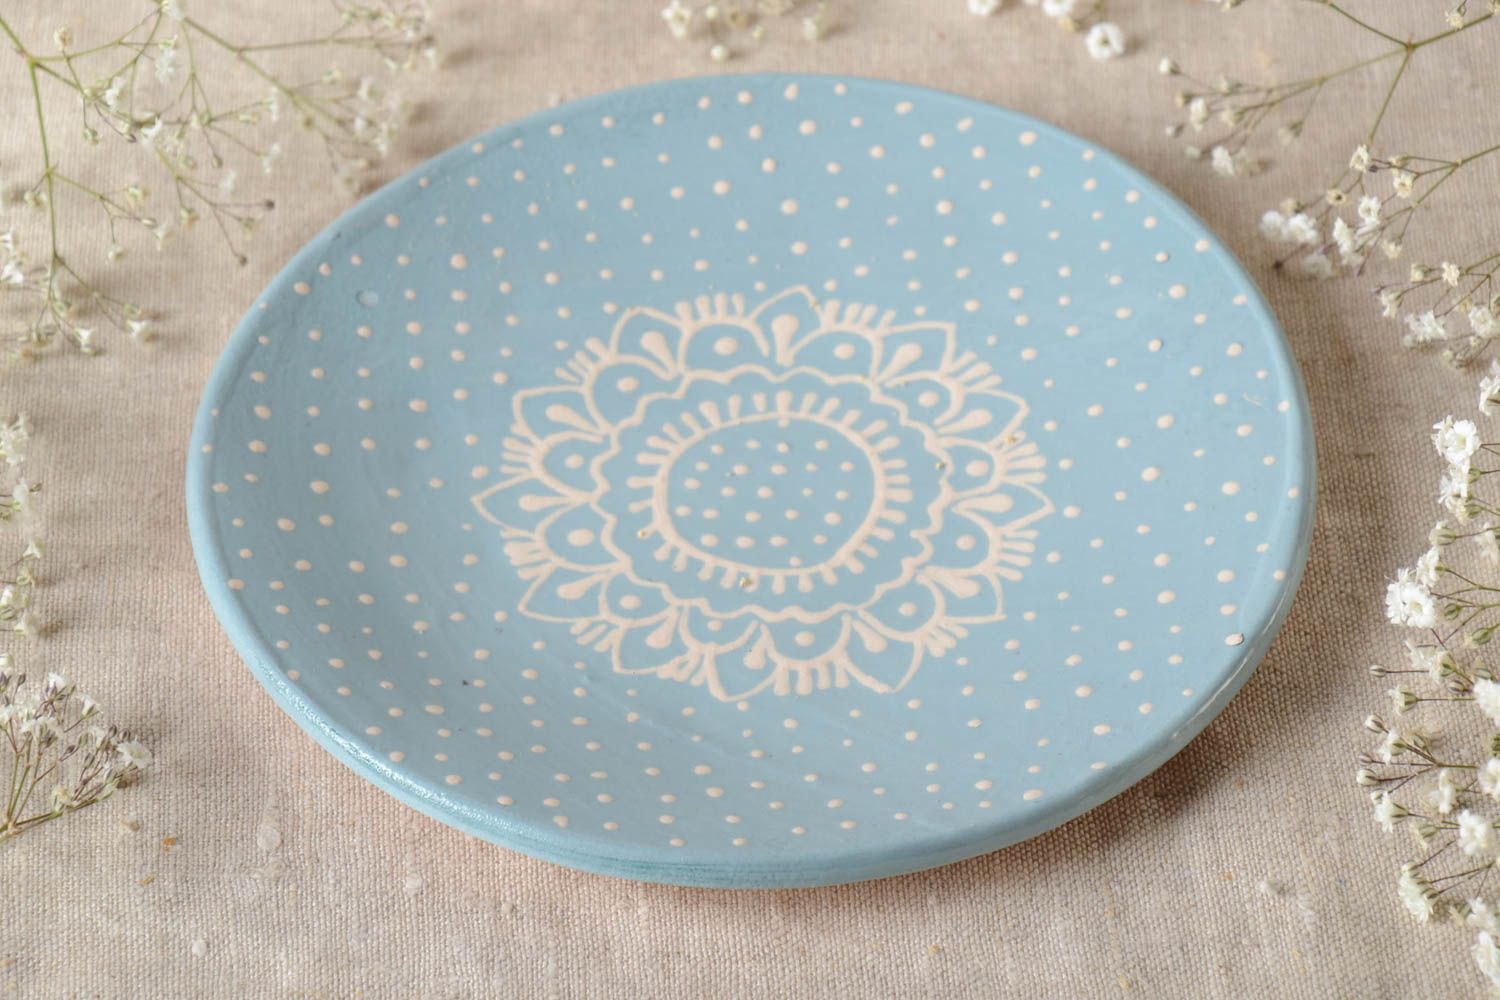 Handmade ceramic dish dessert plate stoneware dinnerware kitchen plates photo 1